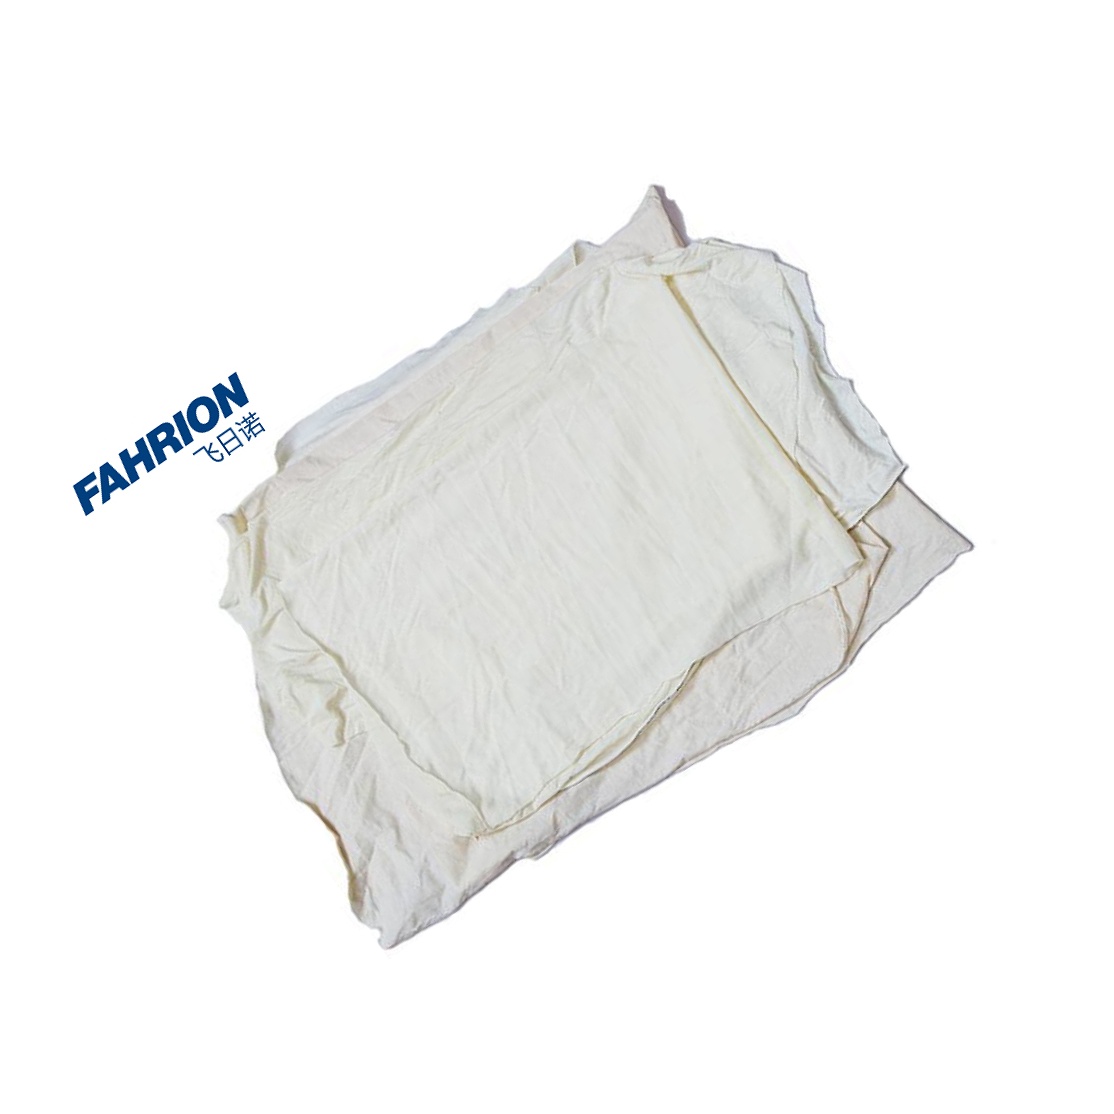 FAHRION 本白棉机用白擦布 GD99-900-1376